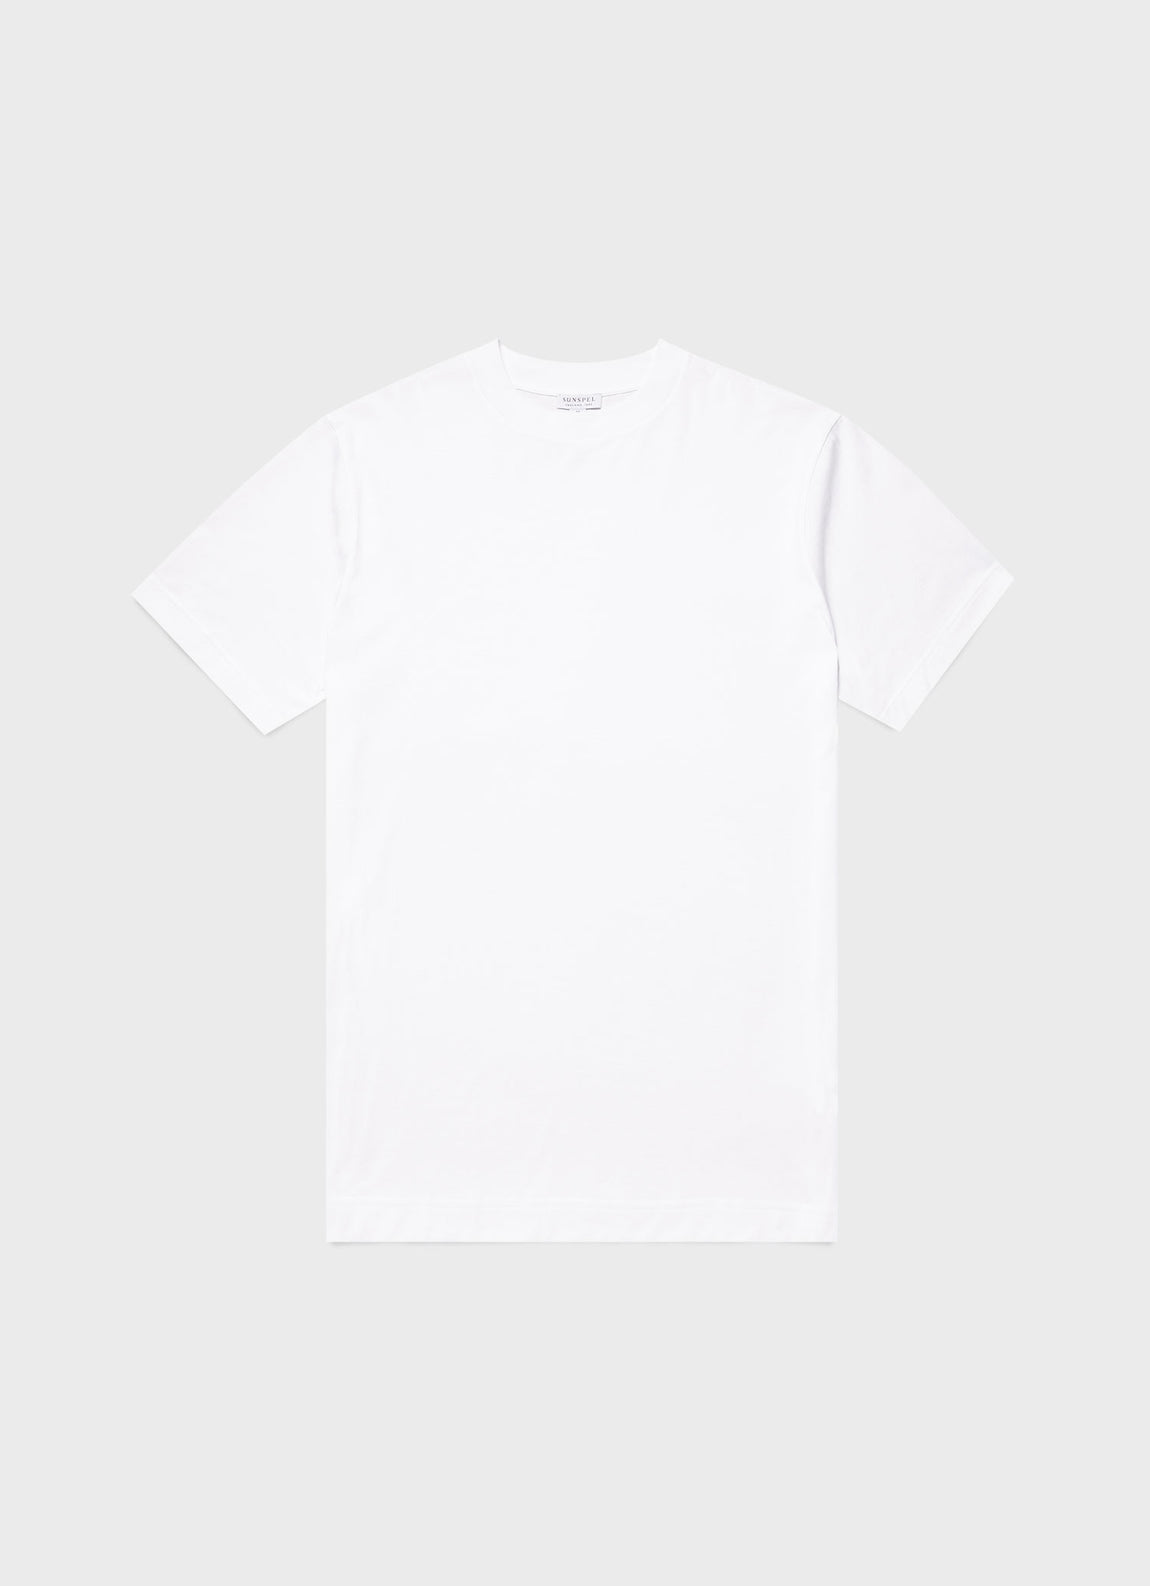 Men's Mock Neck T-shirt in White